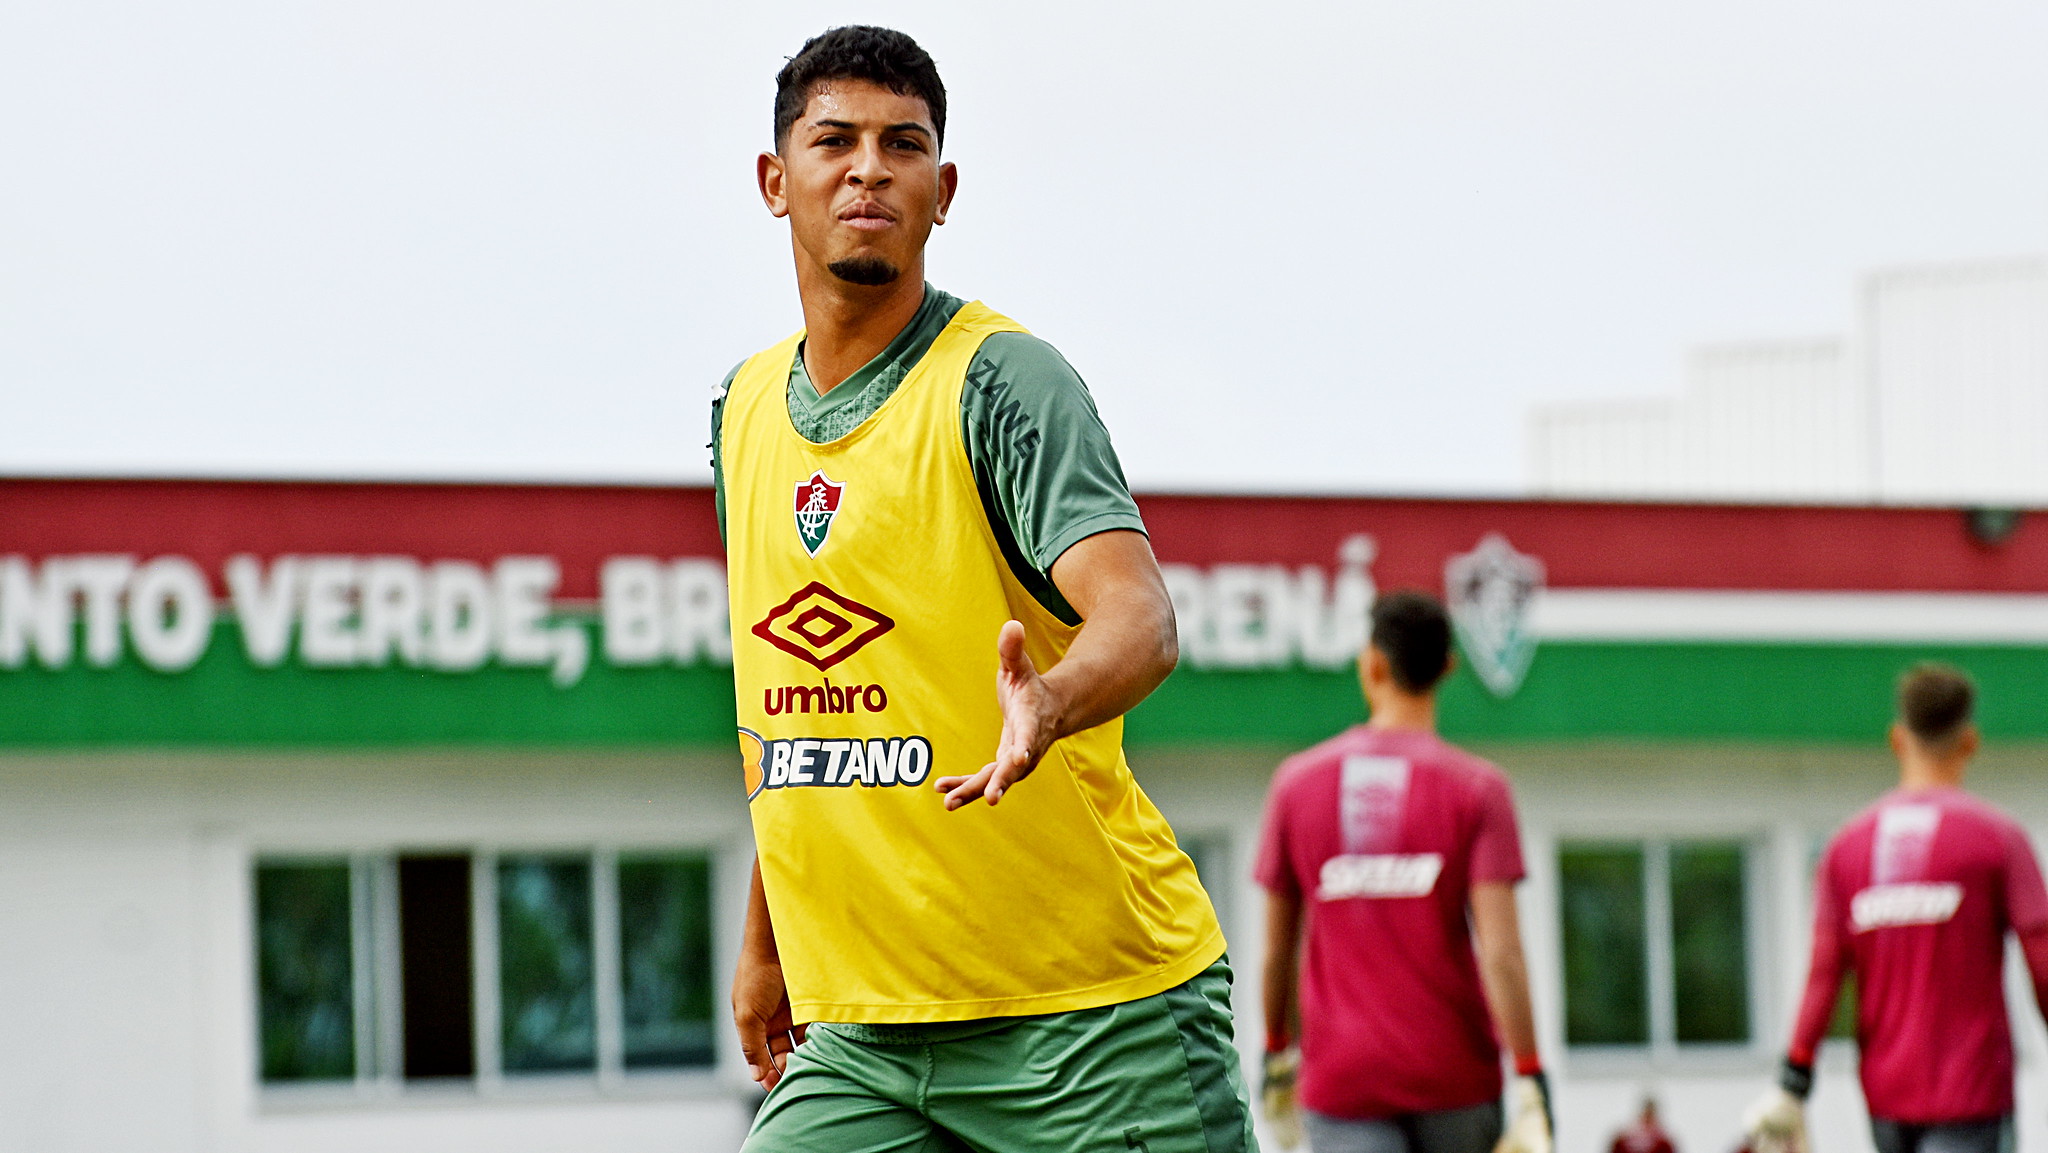 Wiris jogou pelo sub-23 do Fluminense (Foto: Mailson Santana/FFC)